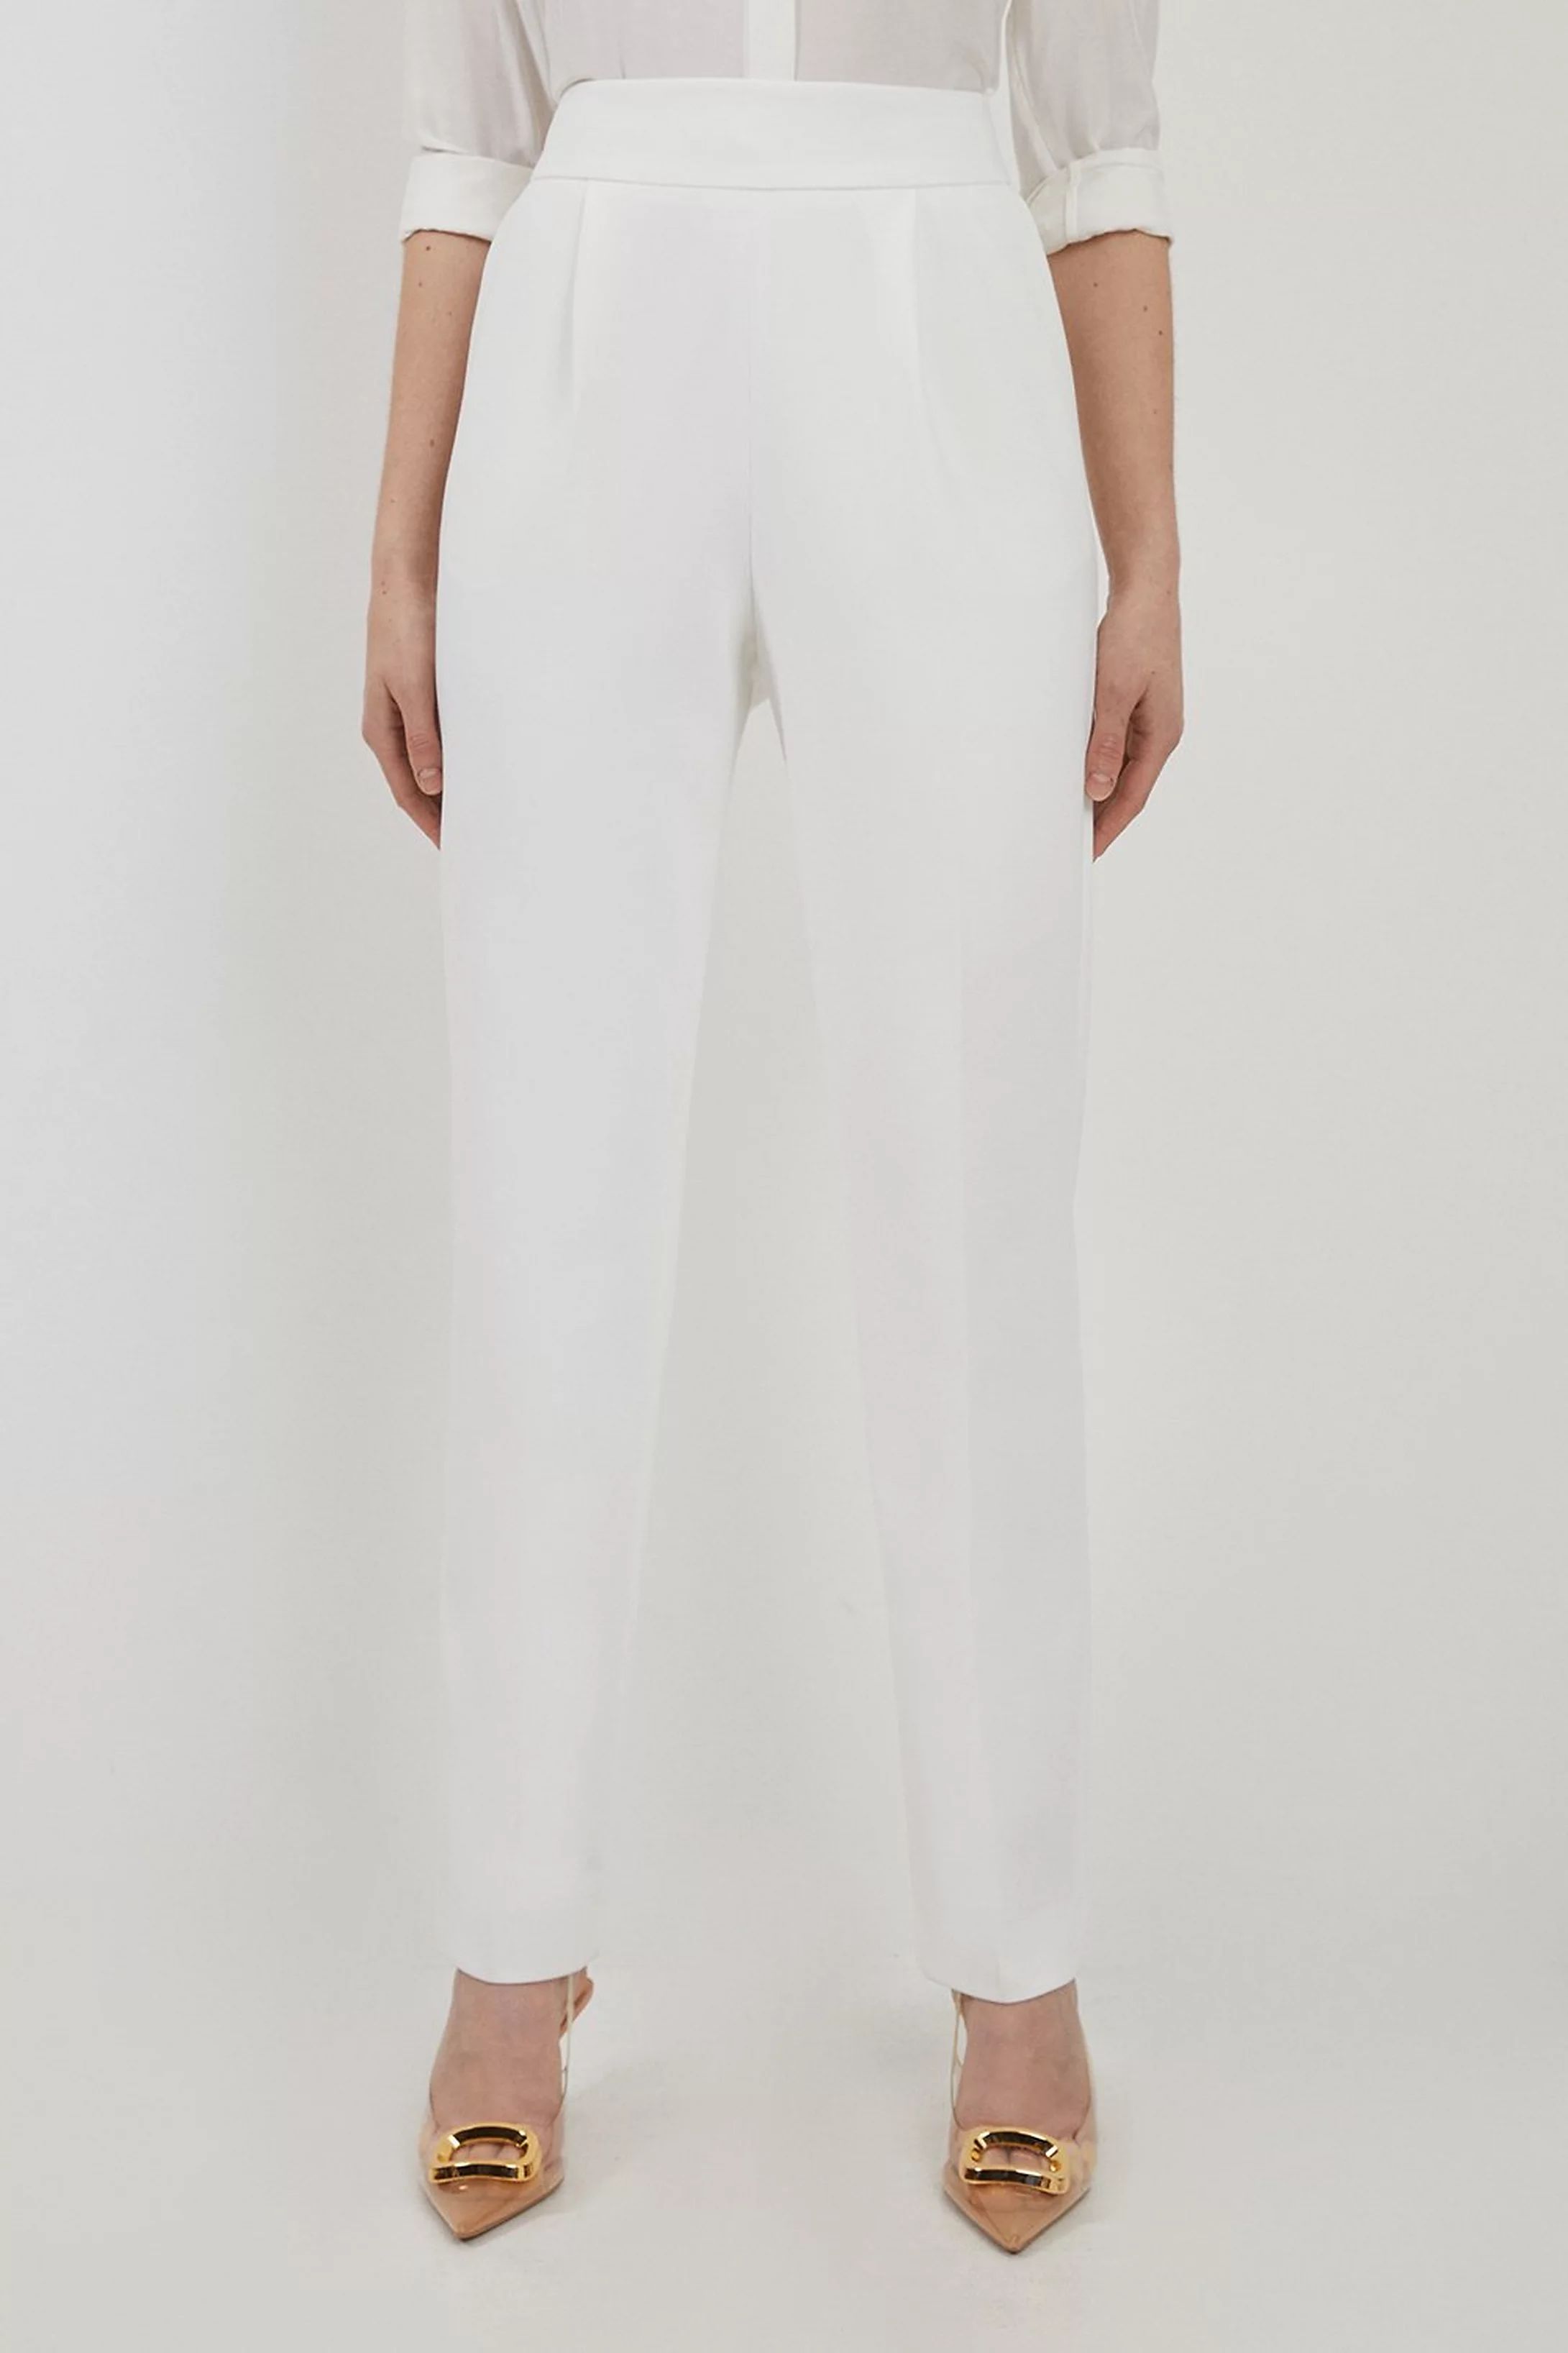 Compact Stretch High Waist Tailored Trousers | Karen Millen UK + IE + DE + NL